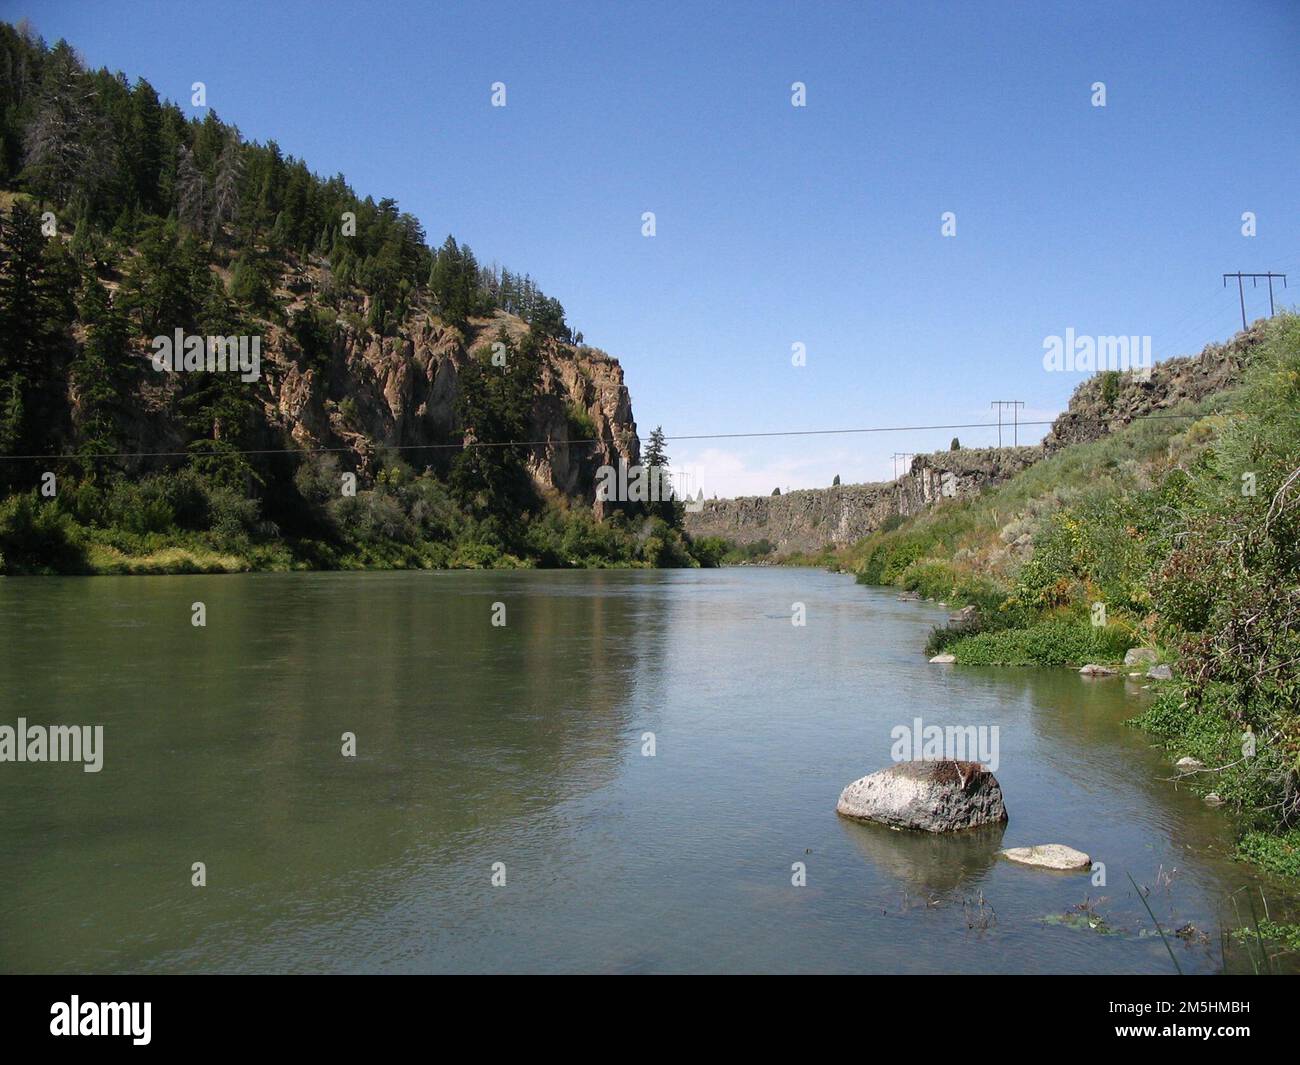 Pioneer Historic Byway - Sanftes Wasser. Das ruhige Wasser des Hells Canyon Reservoir wird von Klippen und hohen grünen Bäumen überblickt. Lage: Hells Canyon Dam, Idaho (45,237° N 116,705° W) Stockfoto